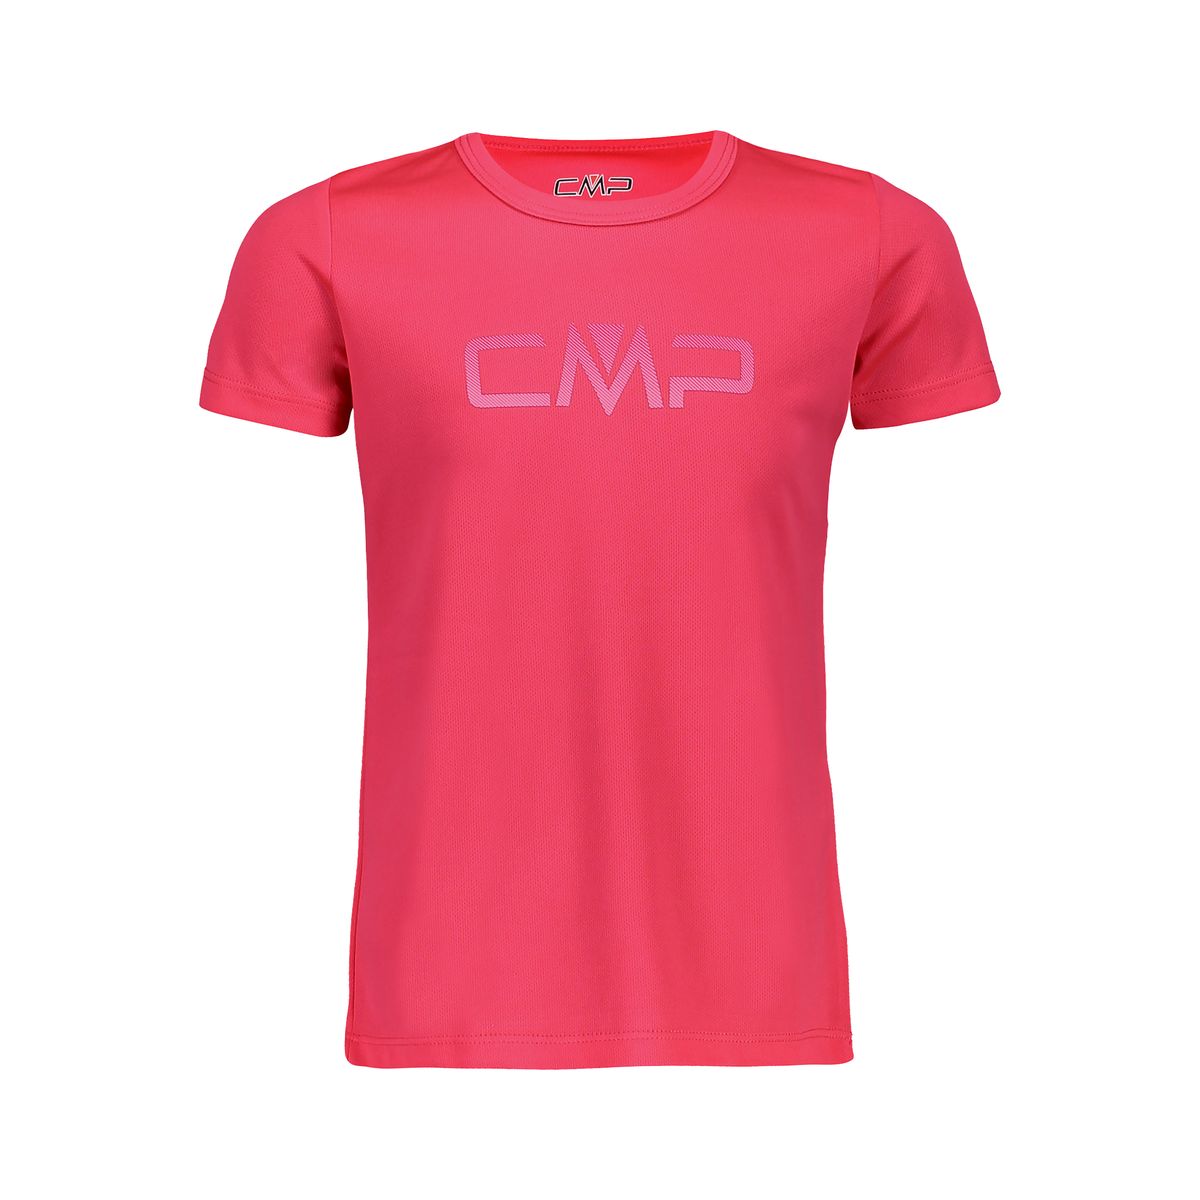 CMP G T-shirt Mädchen T-Shirt